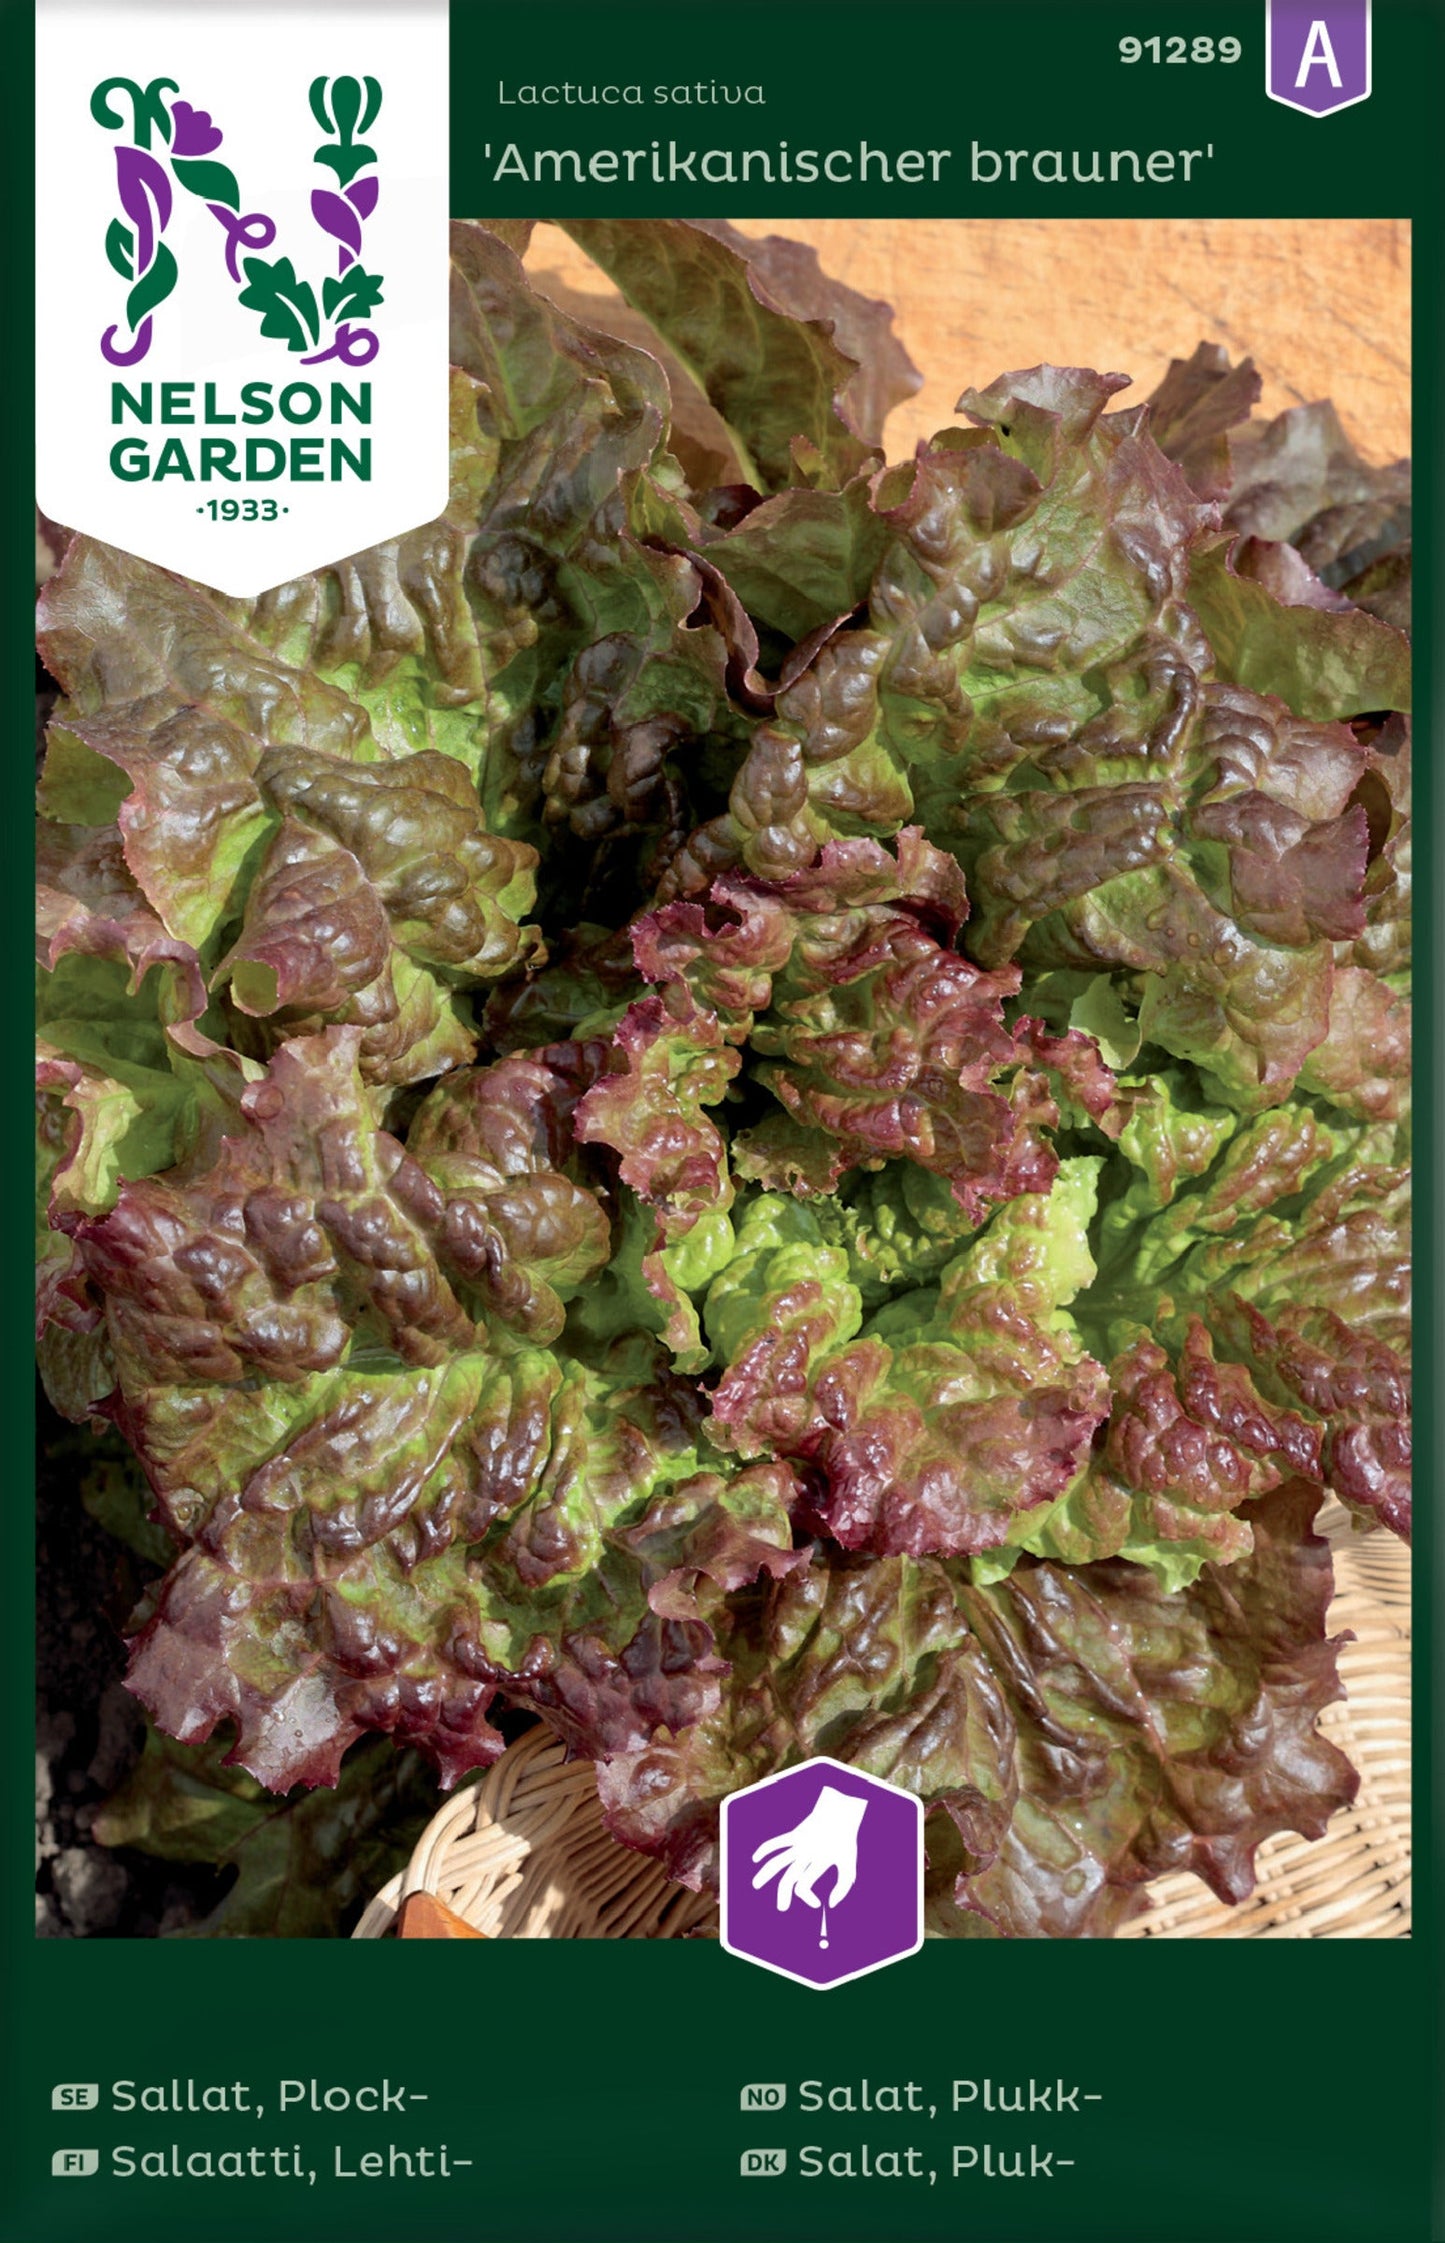 Bilde av Salat, Plukk-, Amerikanischer brauner-Spanne Plantesalg